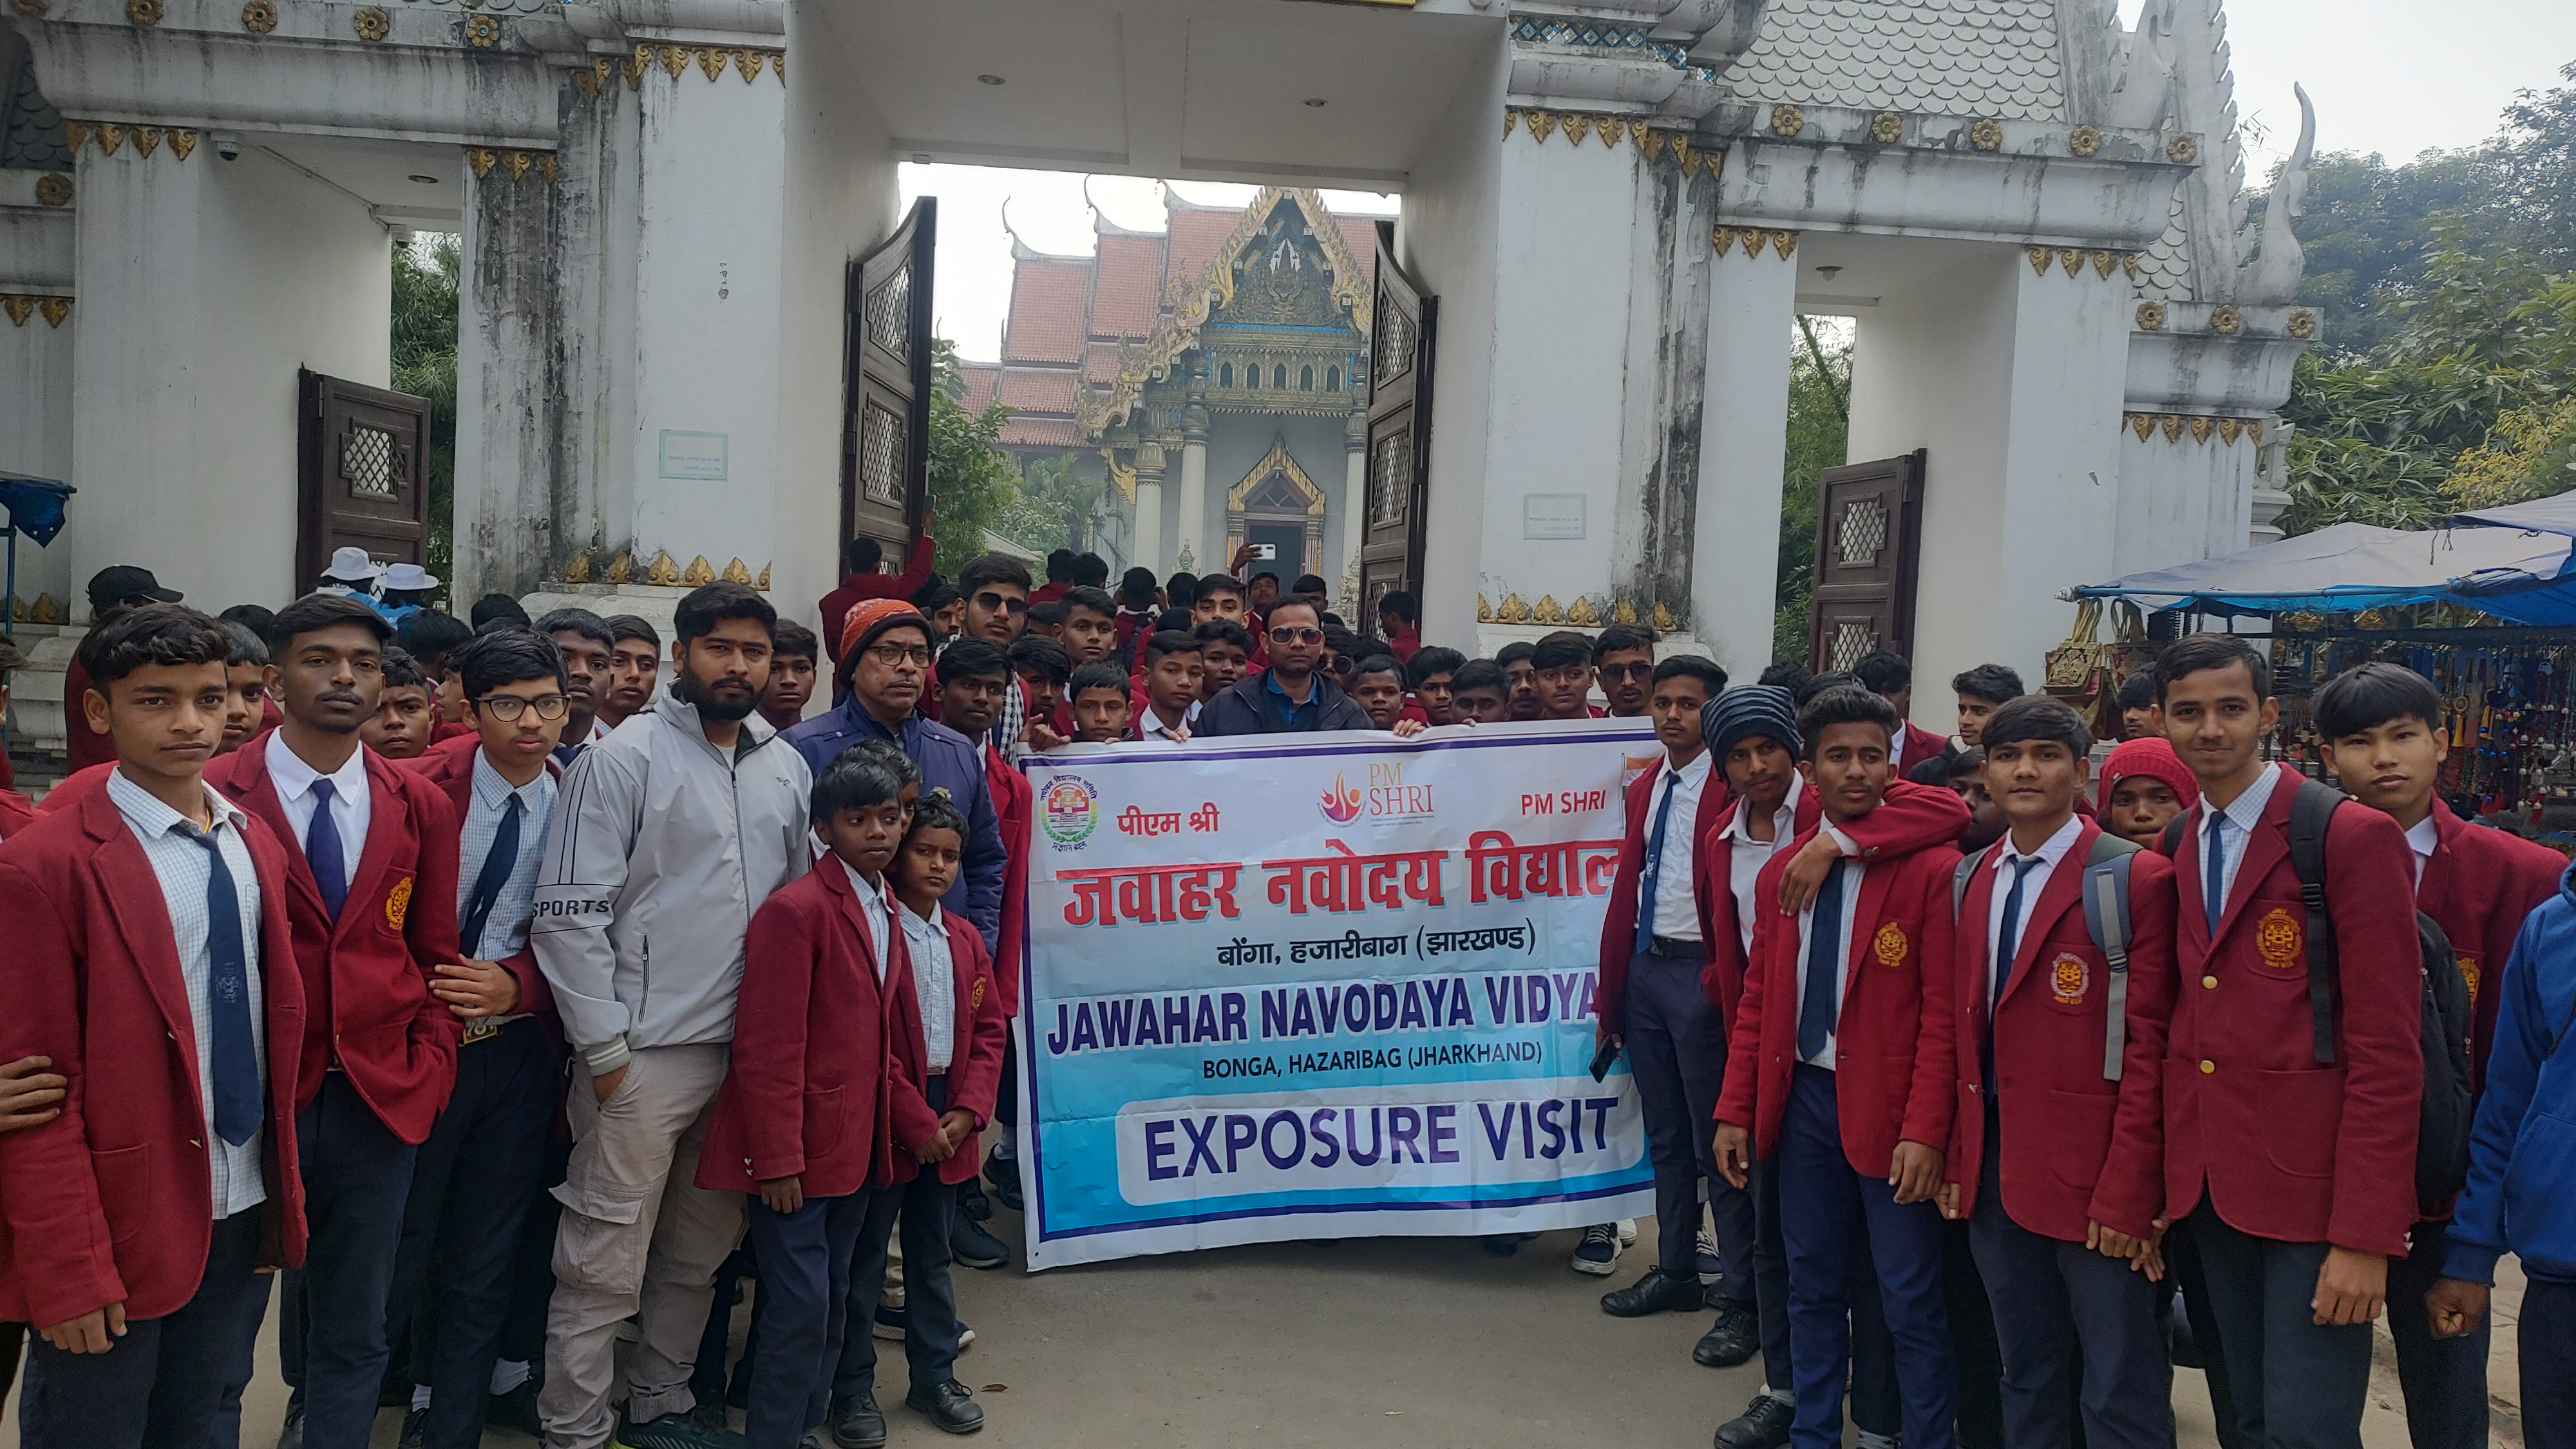 Exposure visit to Bodh Gaya